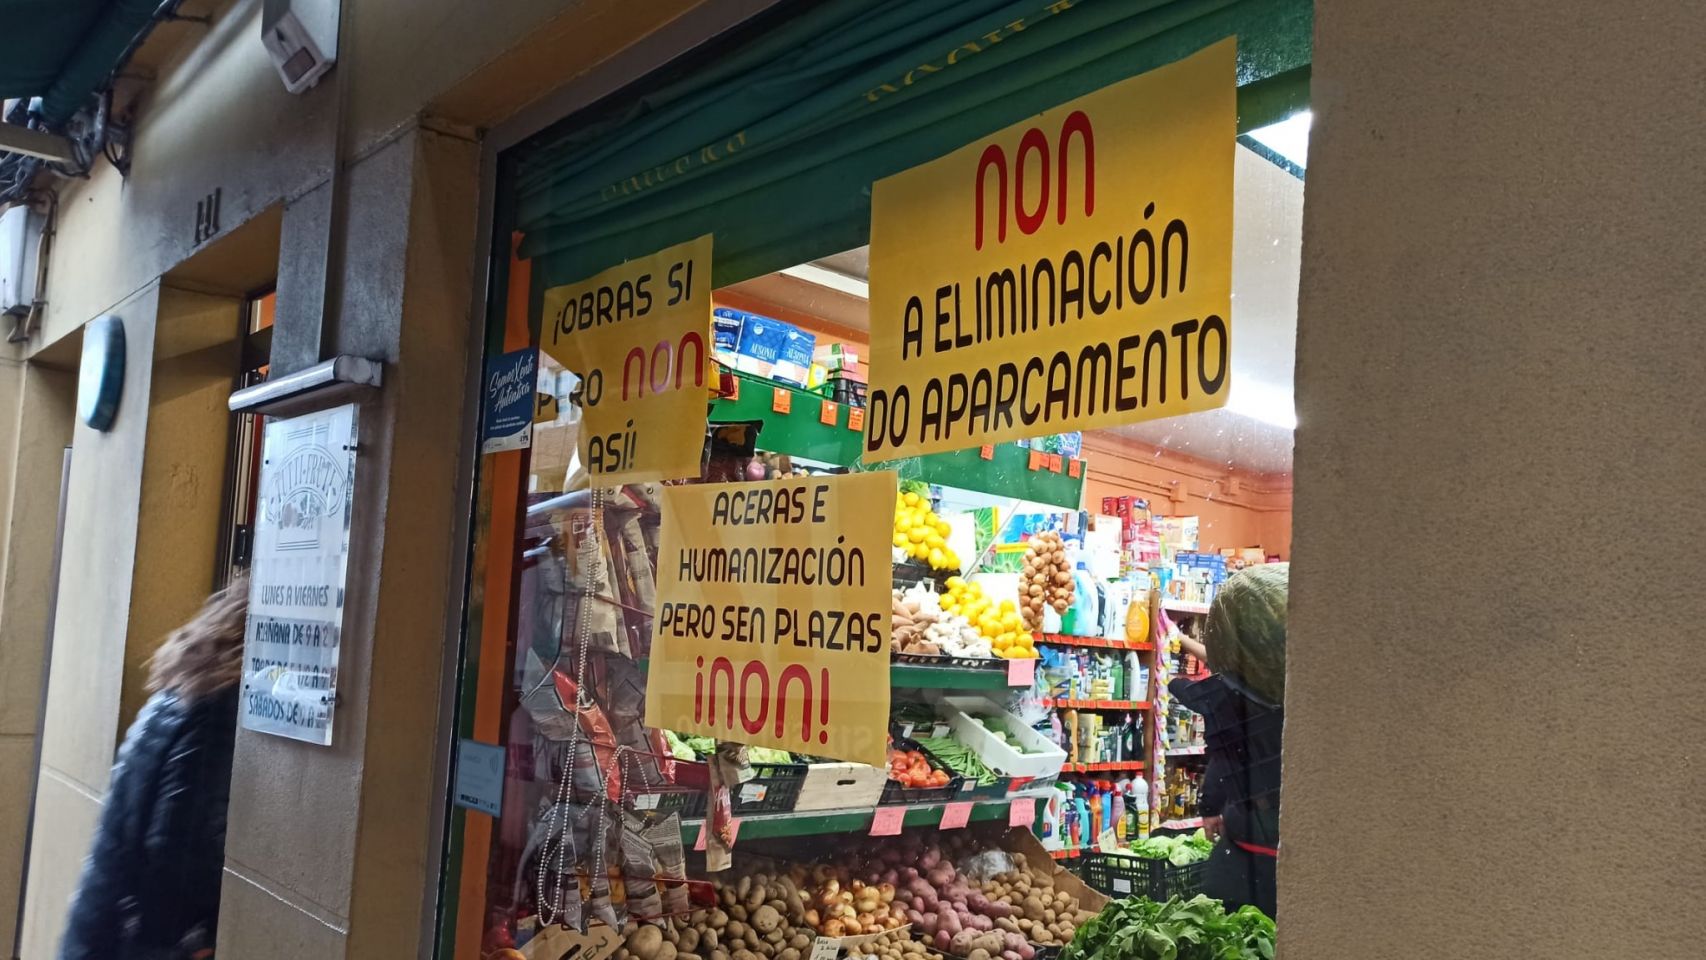 Uno de los comercios de Vilaboa, en Culleredo (A Coruña), en contra de la humanización de la avenida principal.